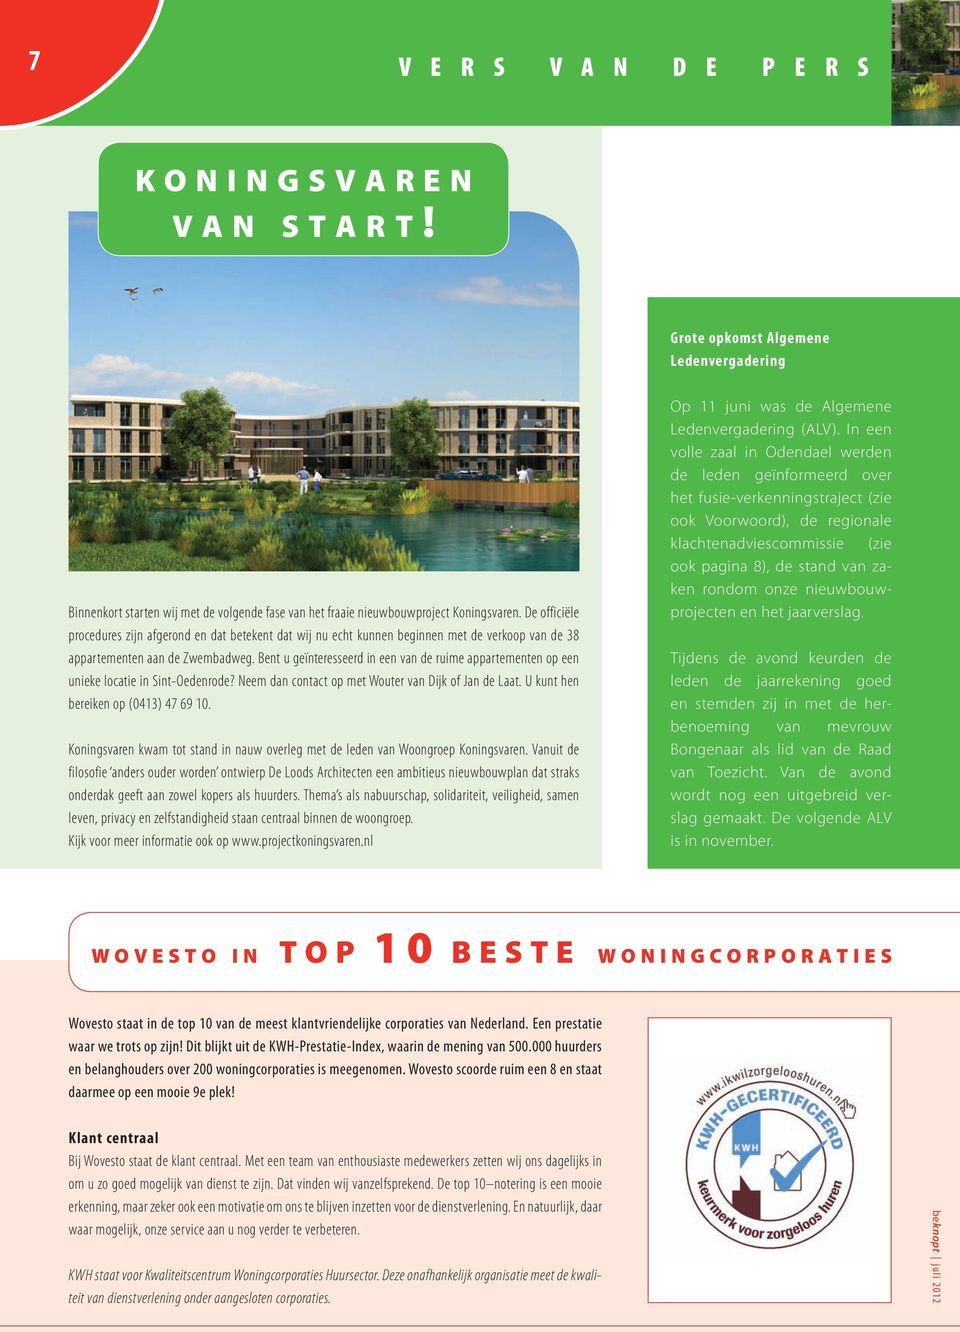 Bent u geïnteresseerd in een van de ruime appartementen op een unieke locatie in Sint-Oedenrode? Neem dan contact op met Wouter van Dijk of Jan de Laat. U kunt hen bereiken op (0413) 47 69 10.